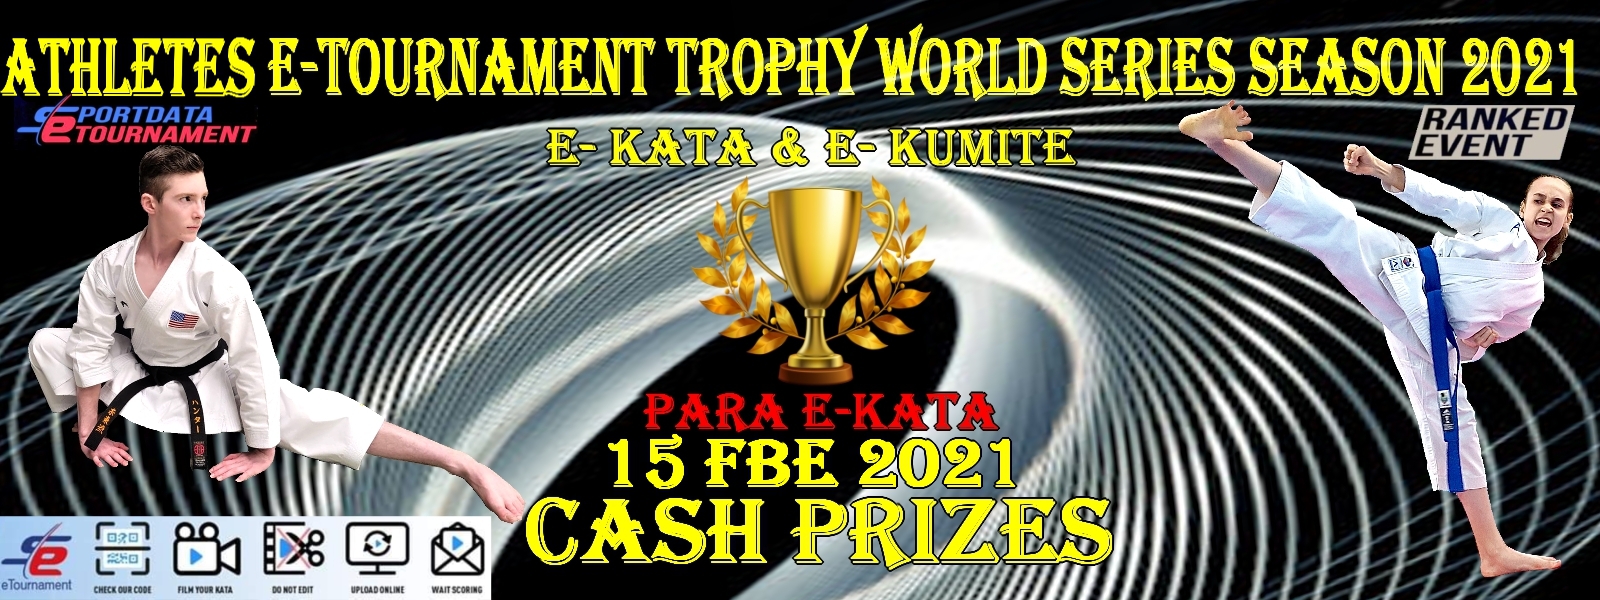 eTournament Karate: ATHLETES E-TOURNAMENT TROPHY WORLD SERIES 1 RANKED EVENT E-KATA E-KUMITE